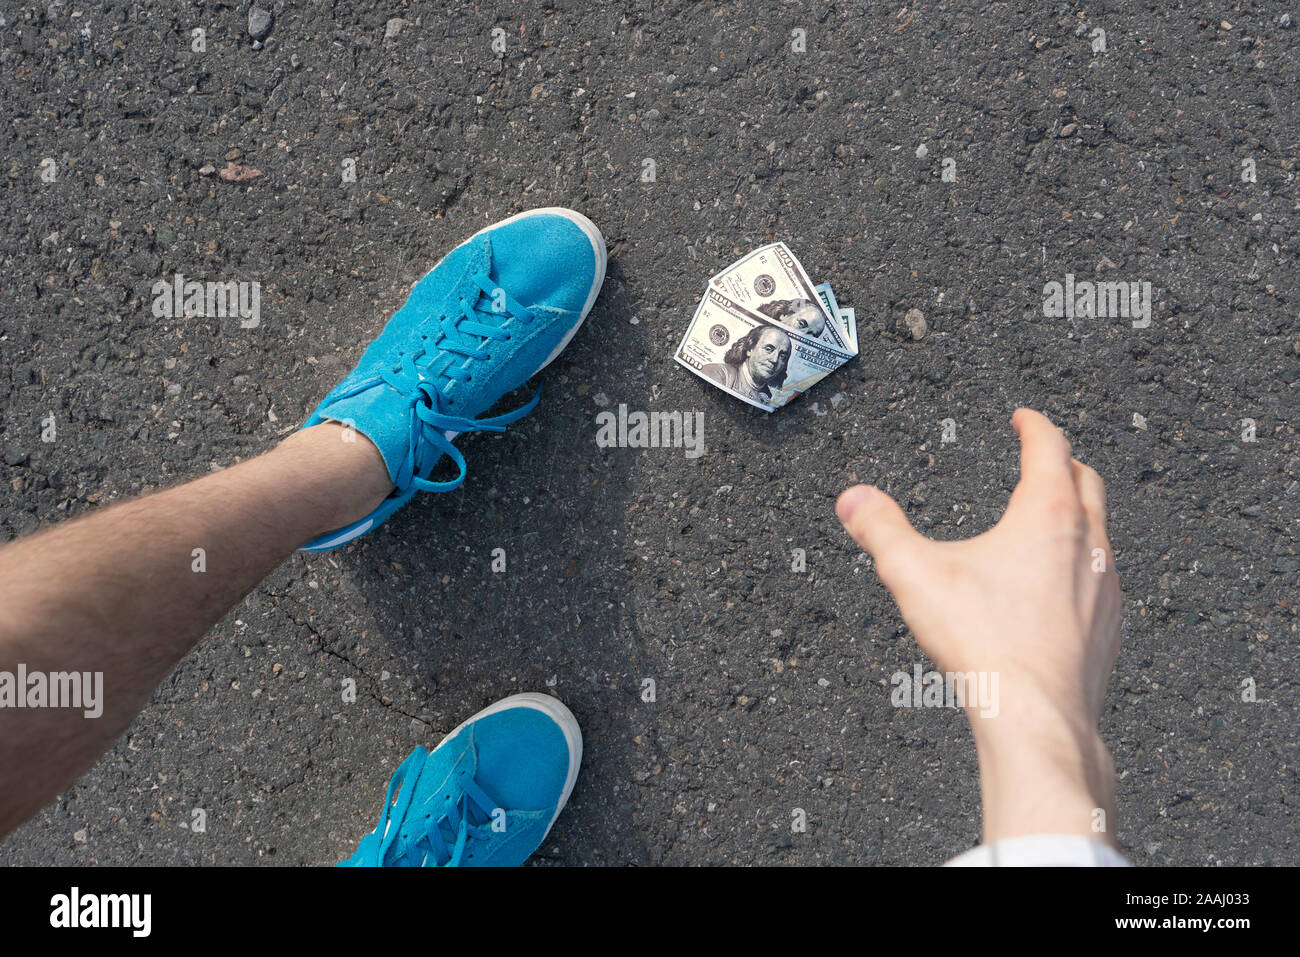 Persona trova la carta moneta perduta e lasciato cadere sul terreno asfaltato all'aperto Foto Stock